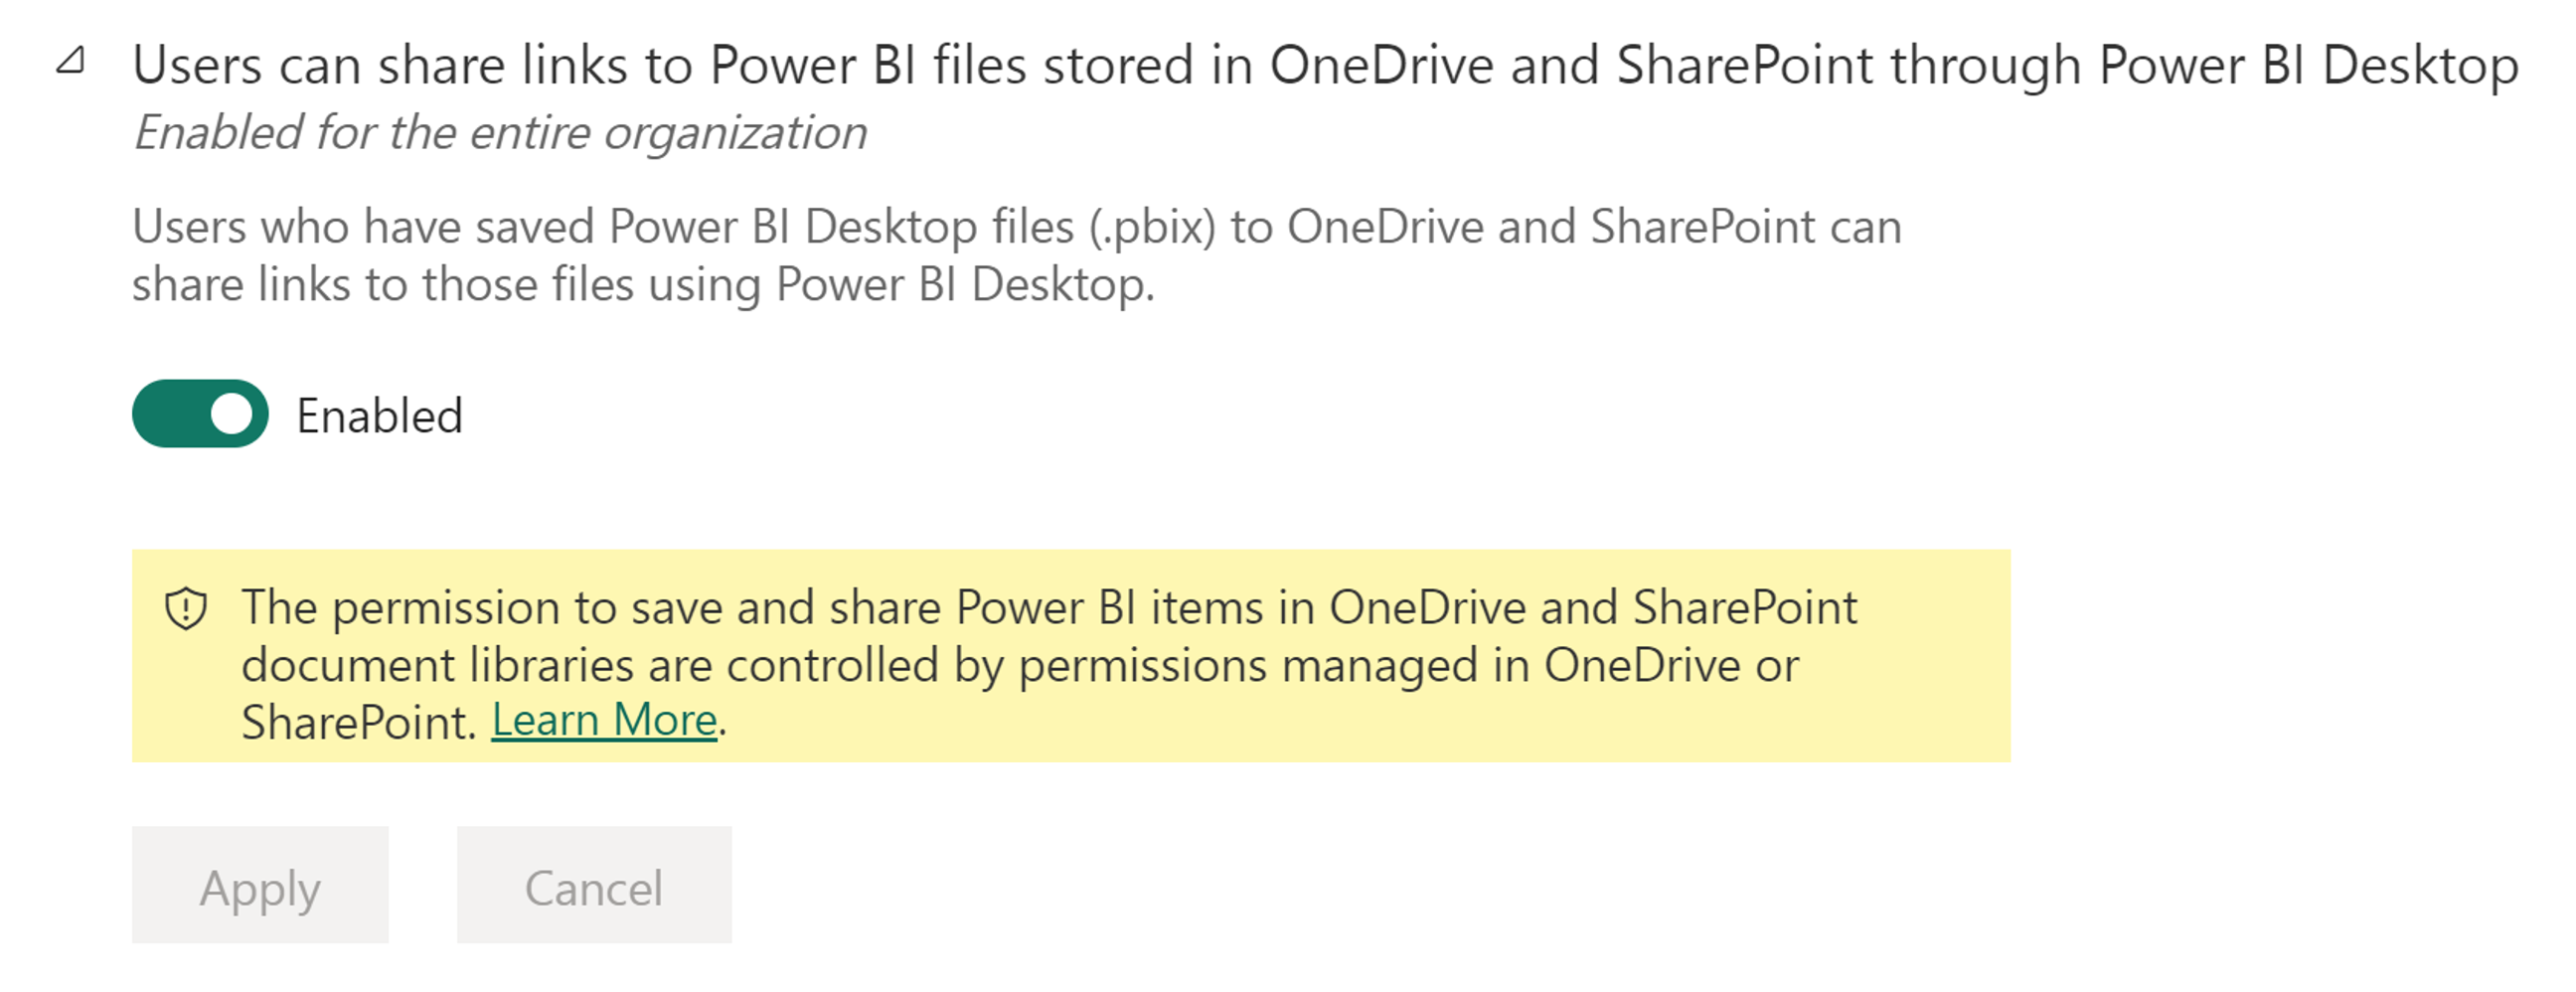 名为“用户可以通过 Power BI Desktop 共享存储在 OneDrive 和 SharePoint 中的 Power BI 文件的链接”的管理员设置的屏幕截图。